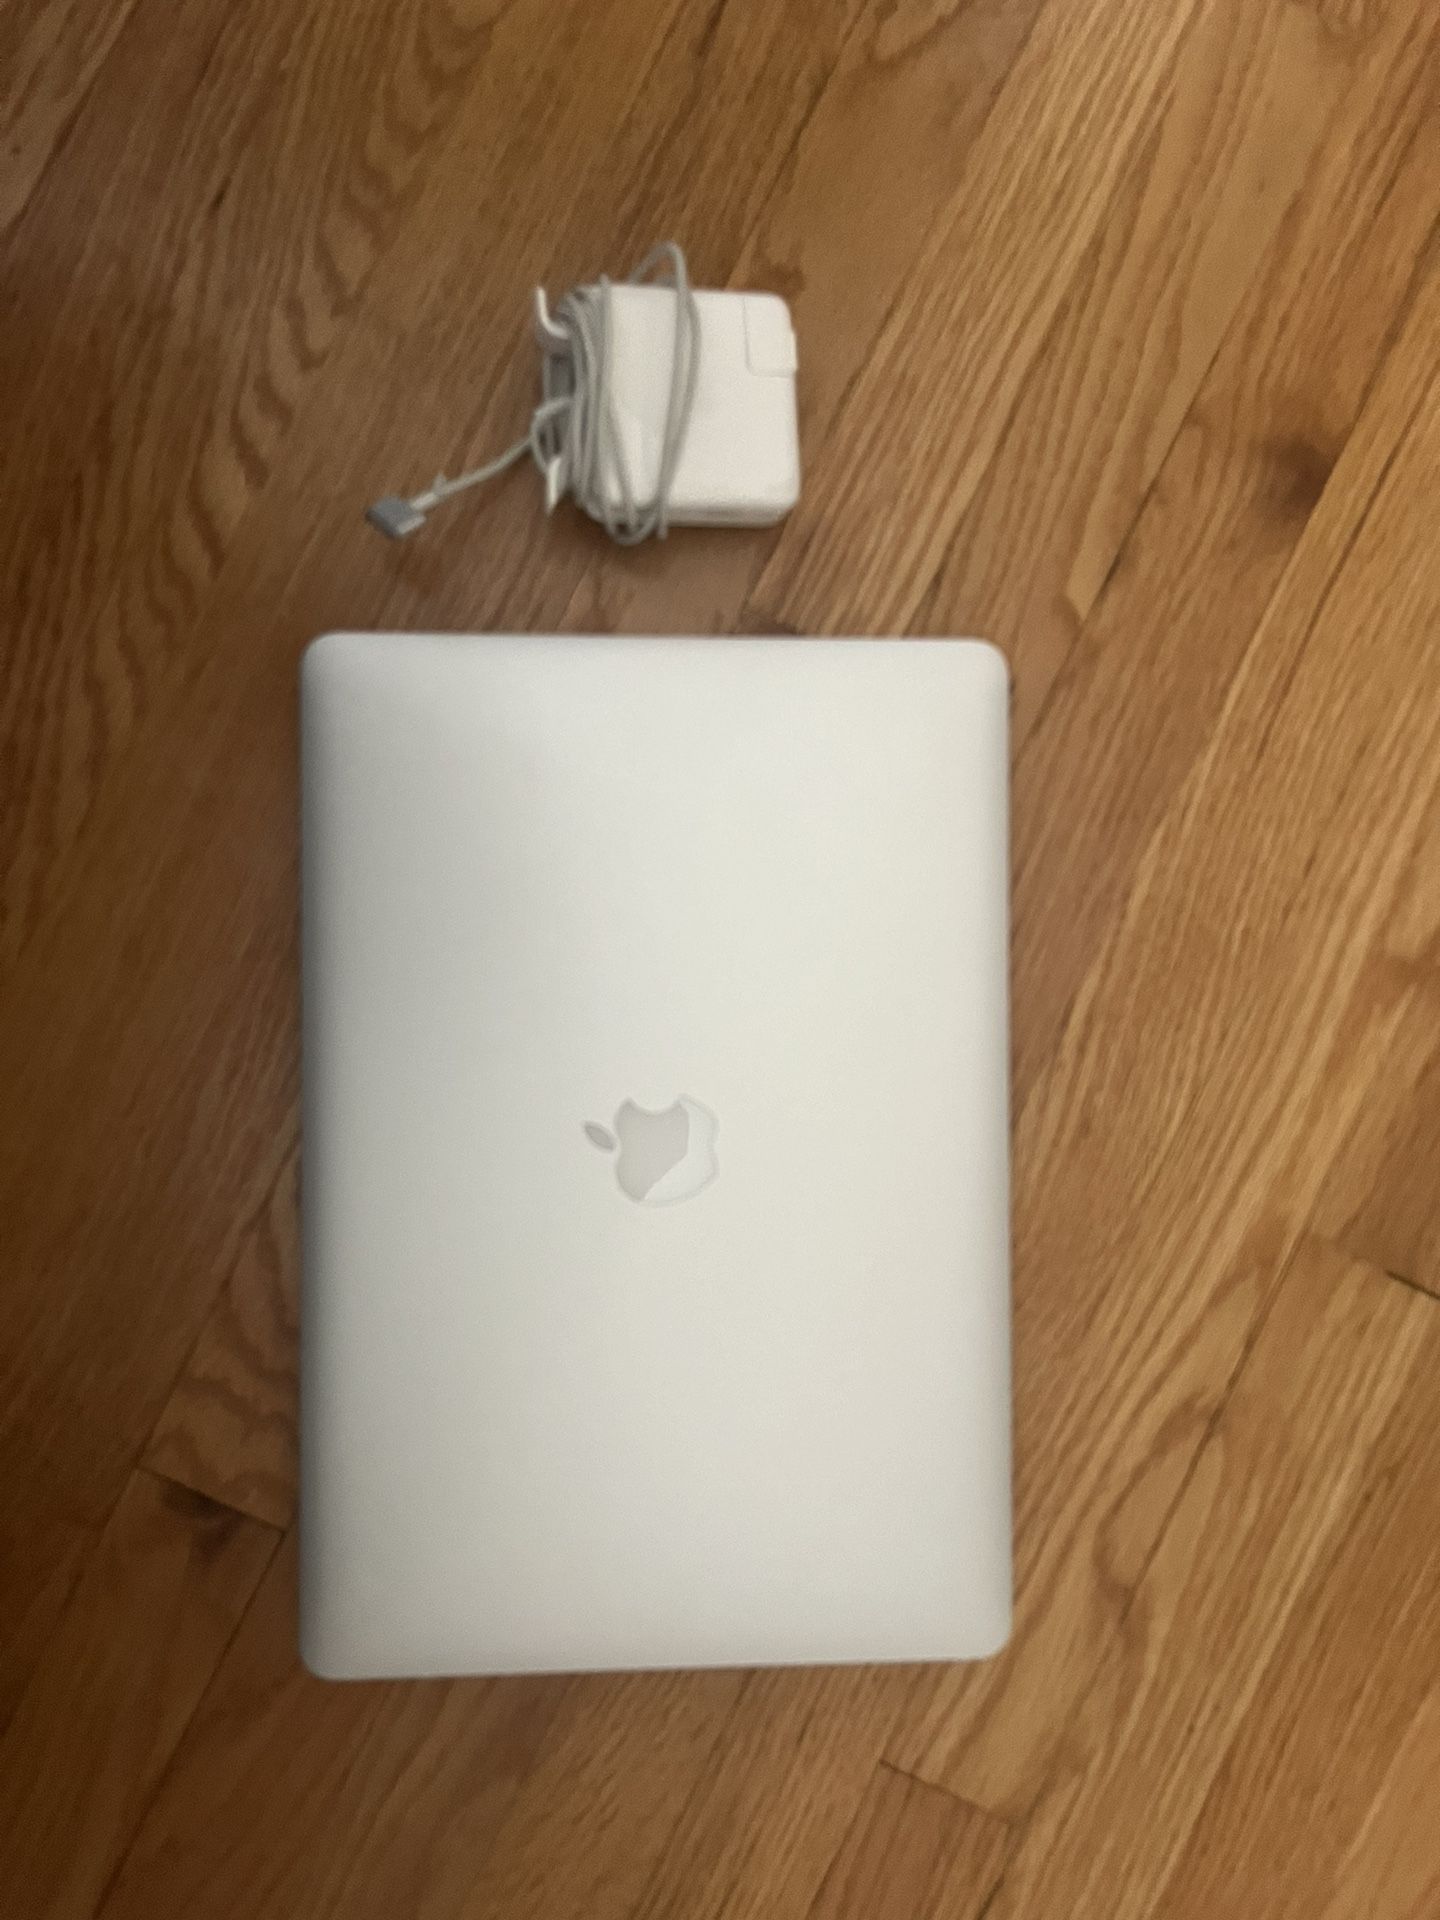 2013 MacBook Pro 15” (OS X El Capitan)